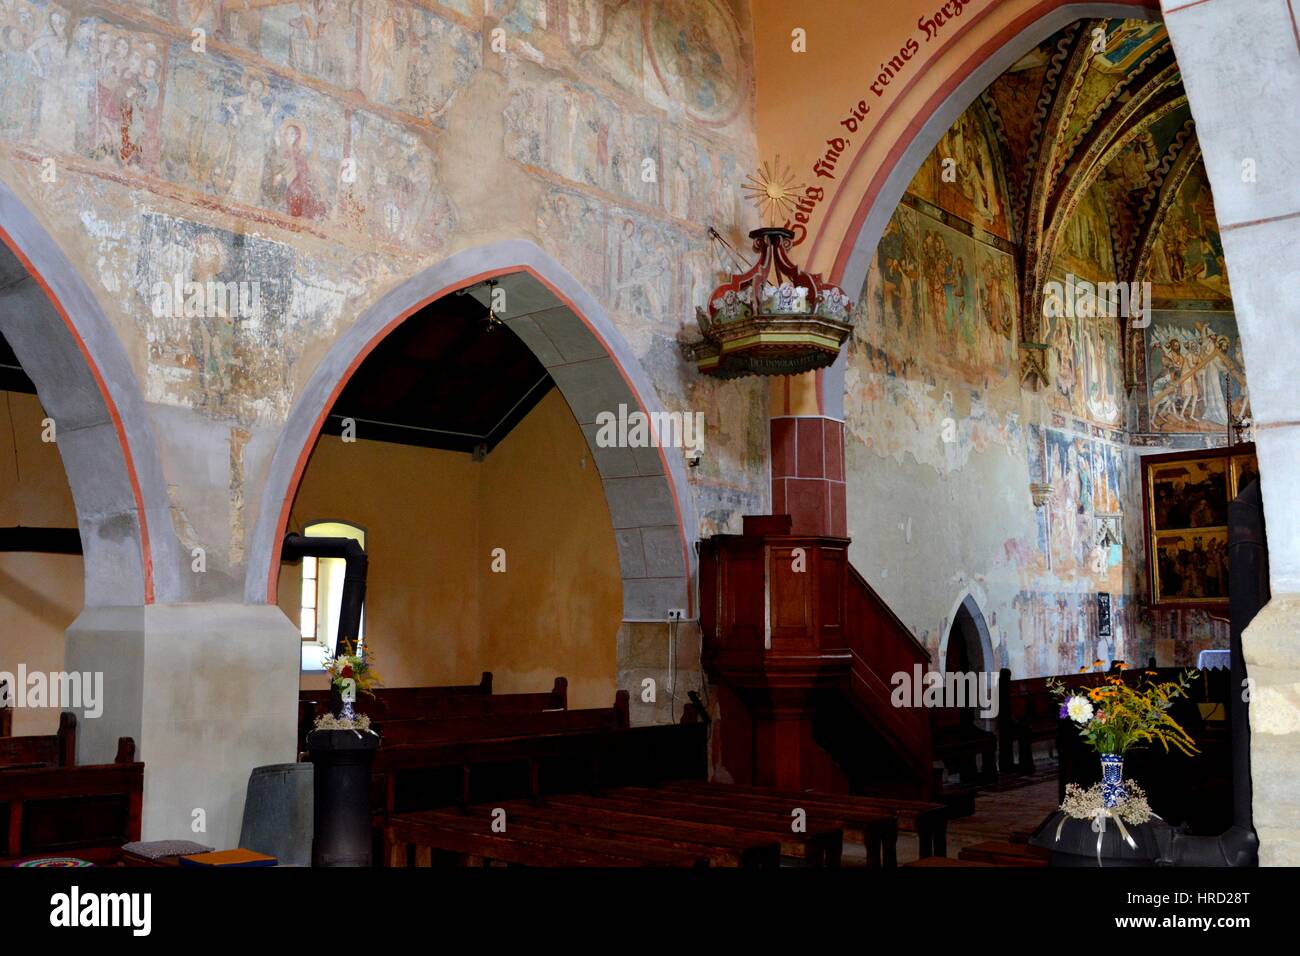 À l'intérieur de l'église médiévale fortifiée dans le village Malancrav. Ici certaines des plus importantes peintures murales de style gothique en Transylvanie. Banque D'Images